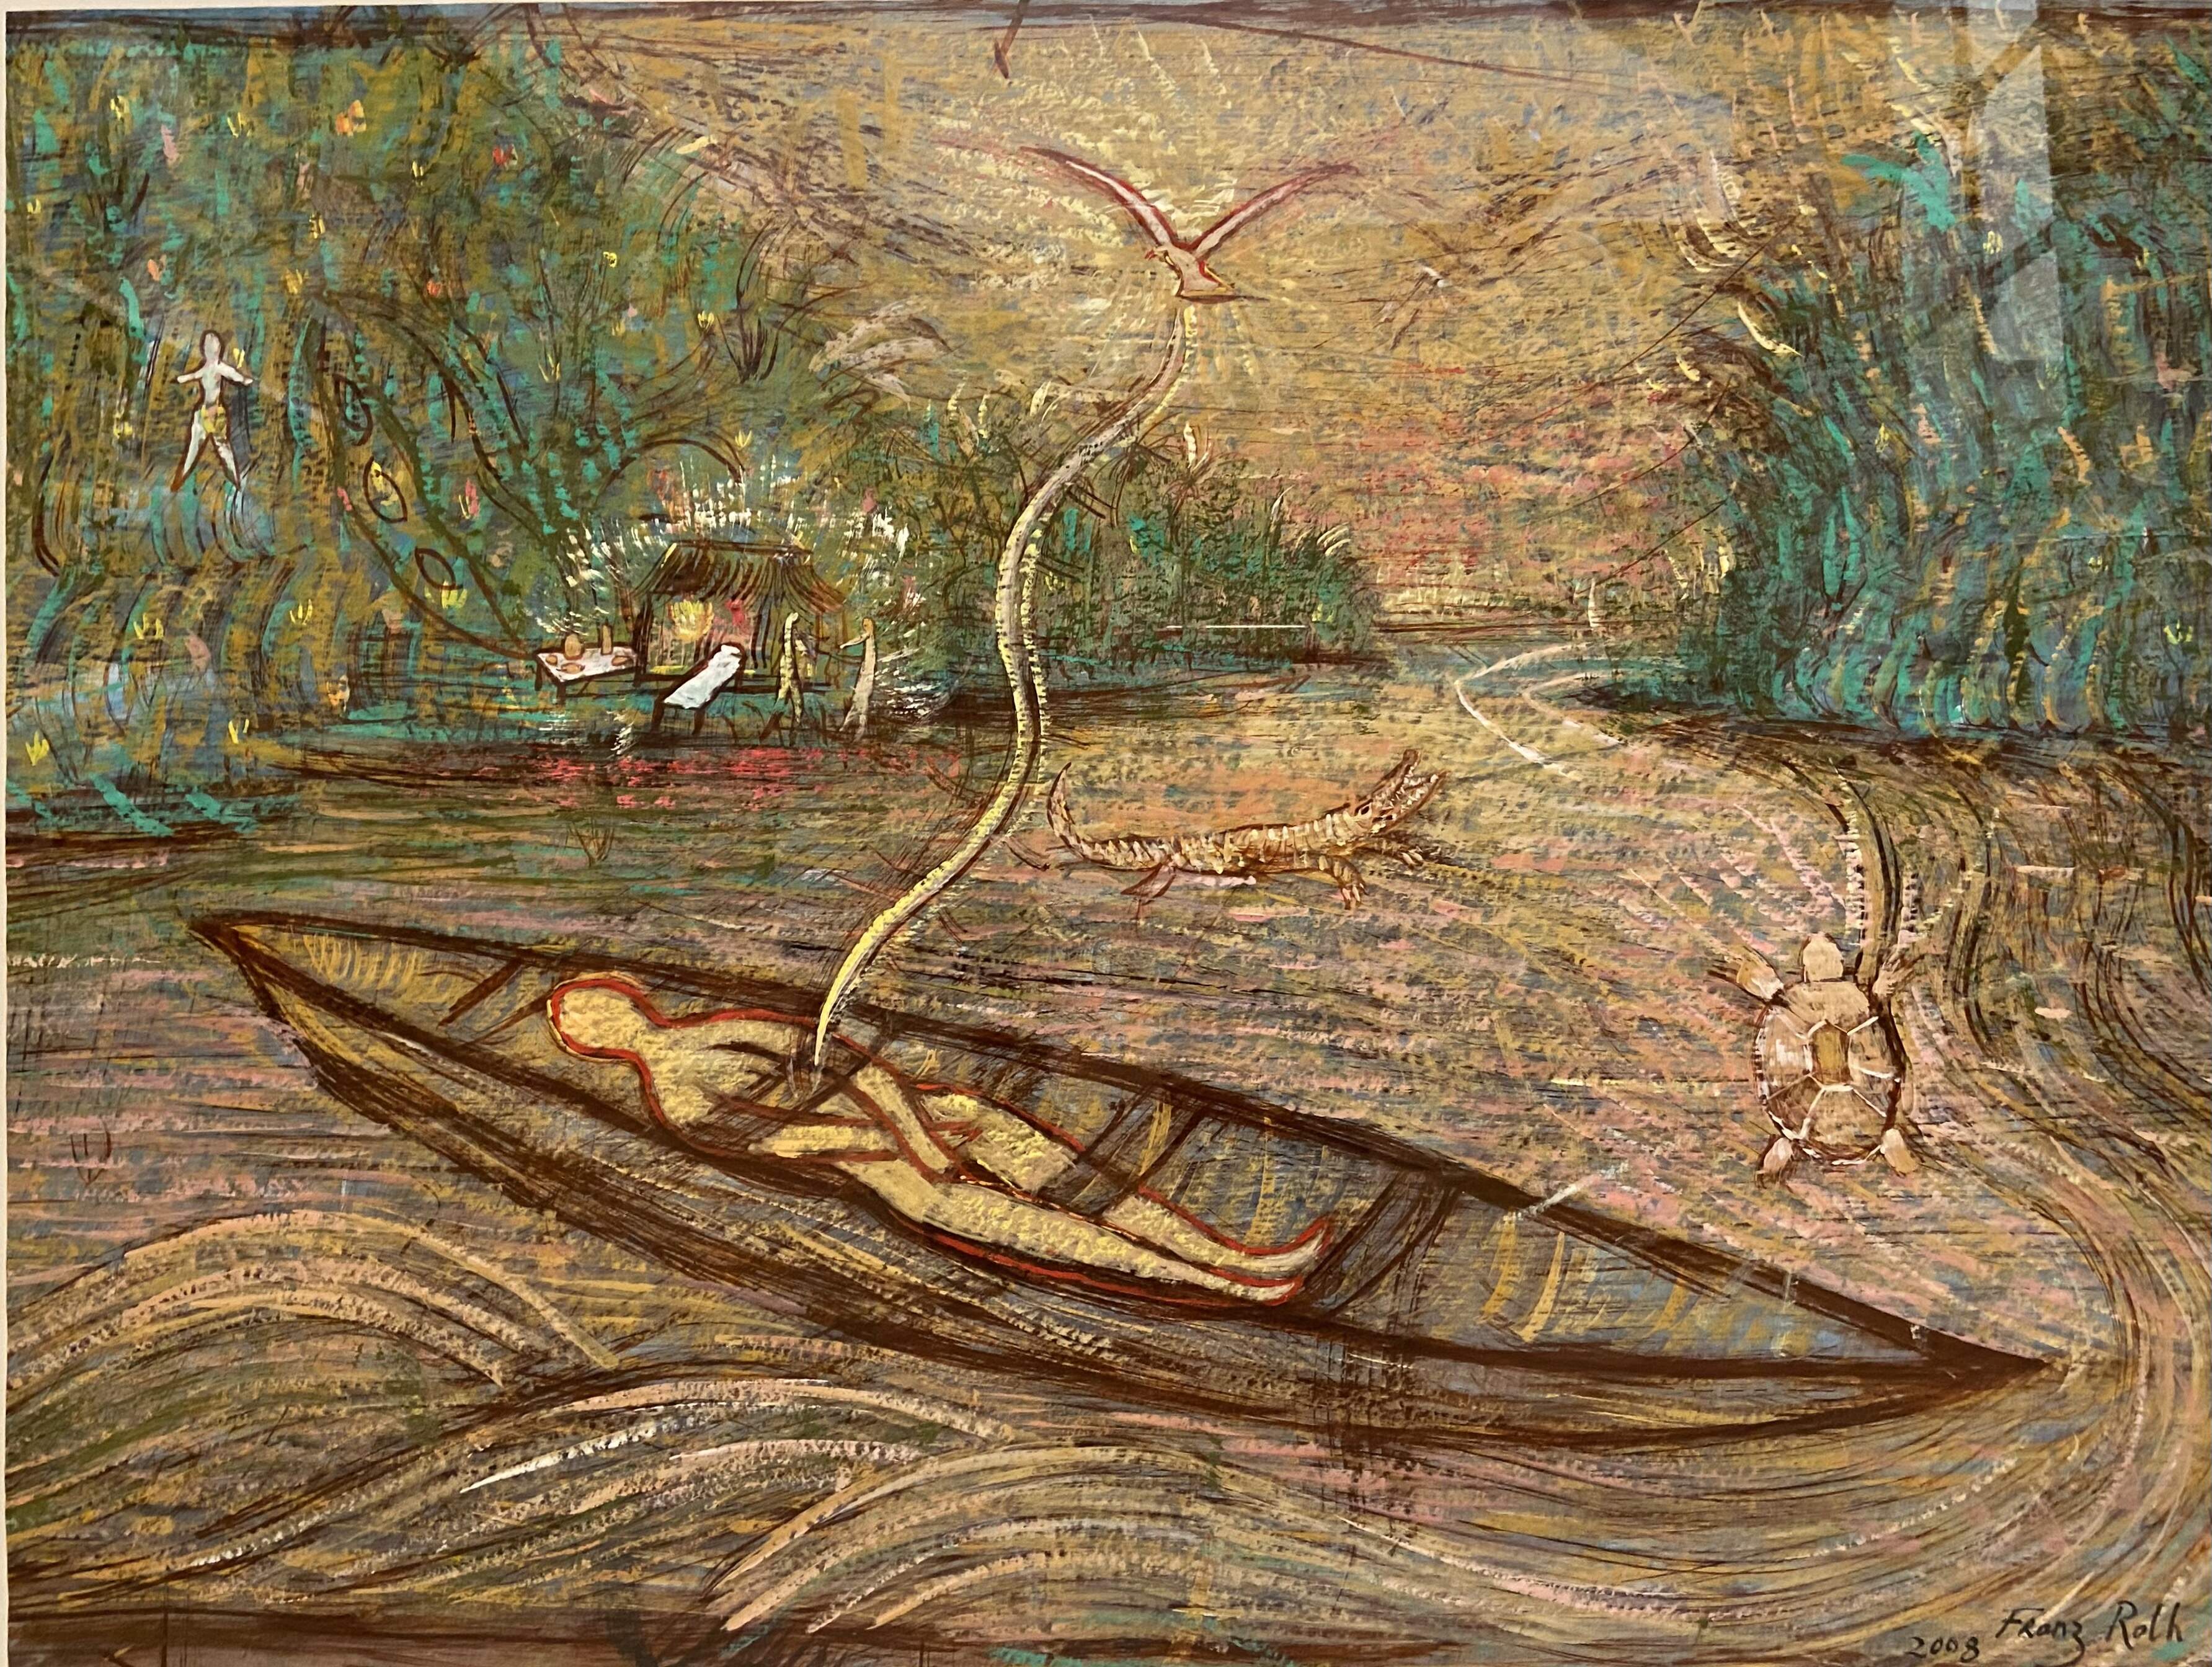 FRANZ ROTH, Das Boot, 2008, Tinte und Gouache auf Papier, 70 x 100 cm